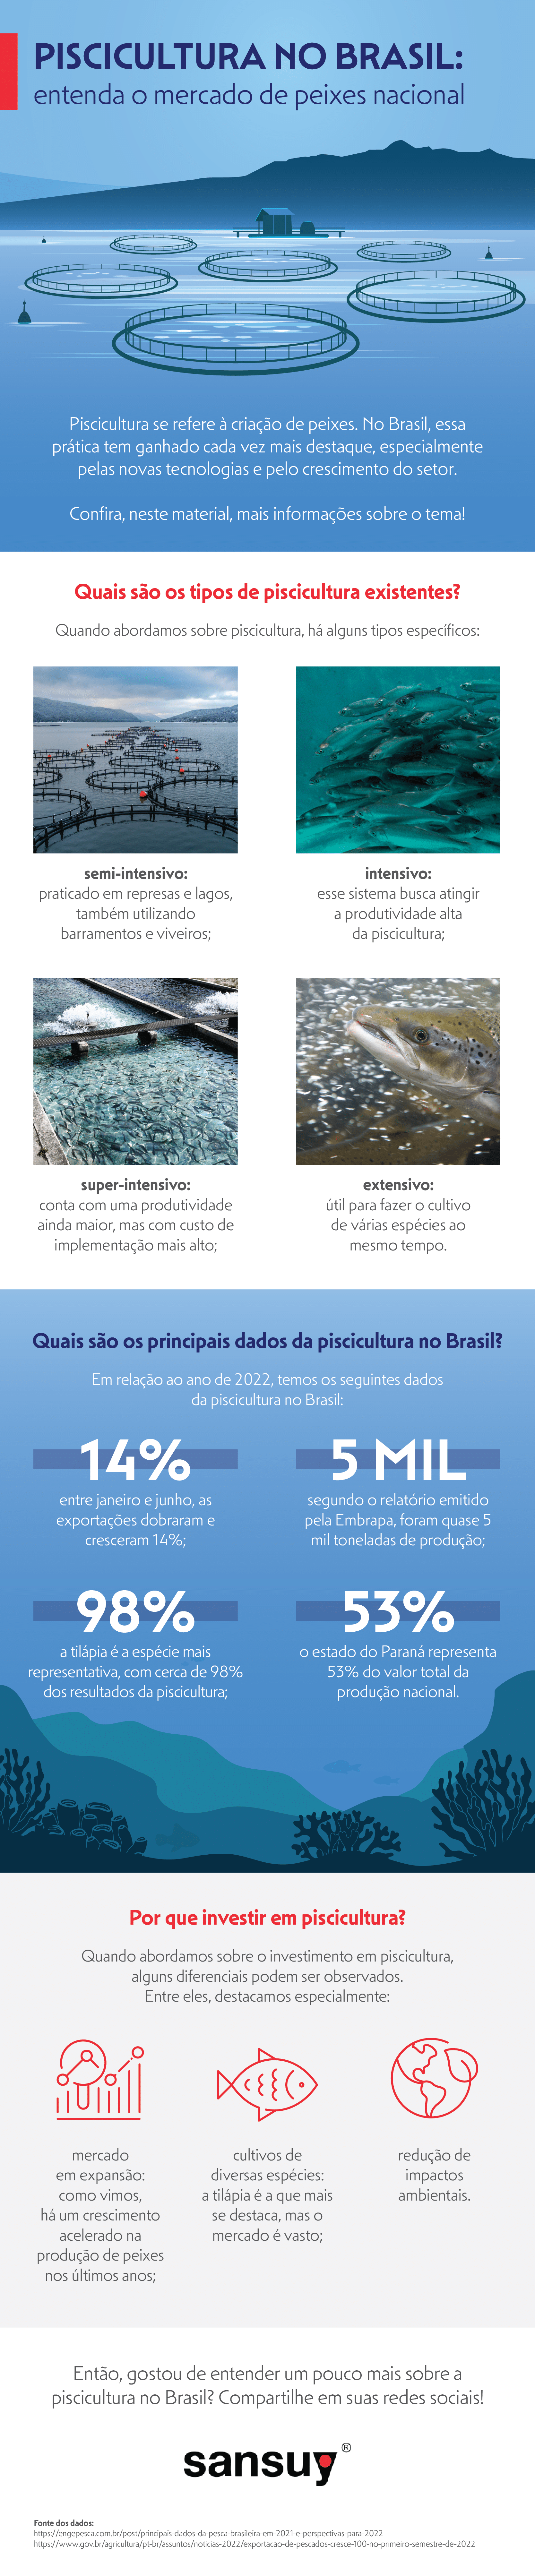 Piscicultura no Brasil: entenda o mercado de peixes nacional